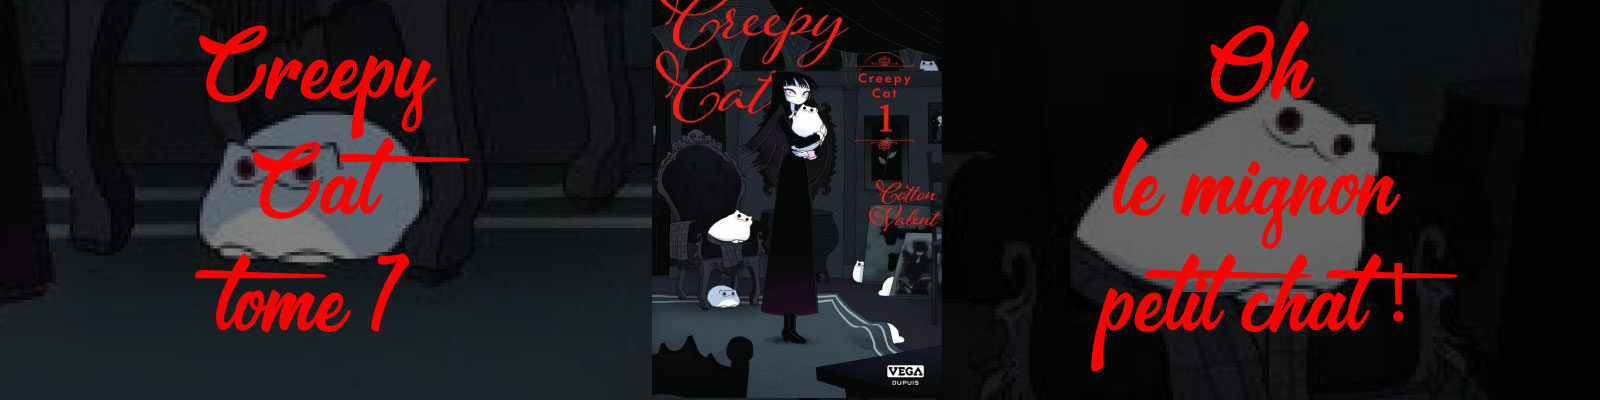 Creepy Cat-T1-2